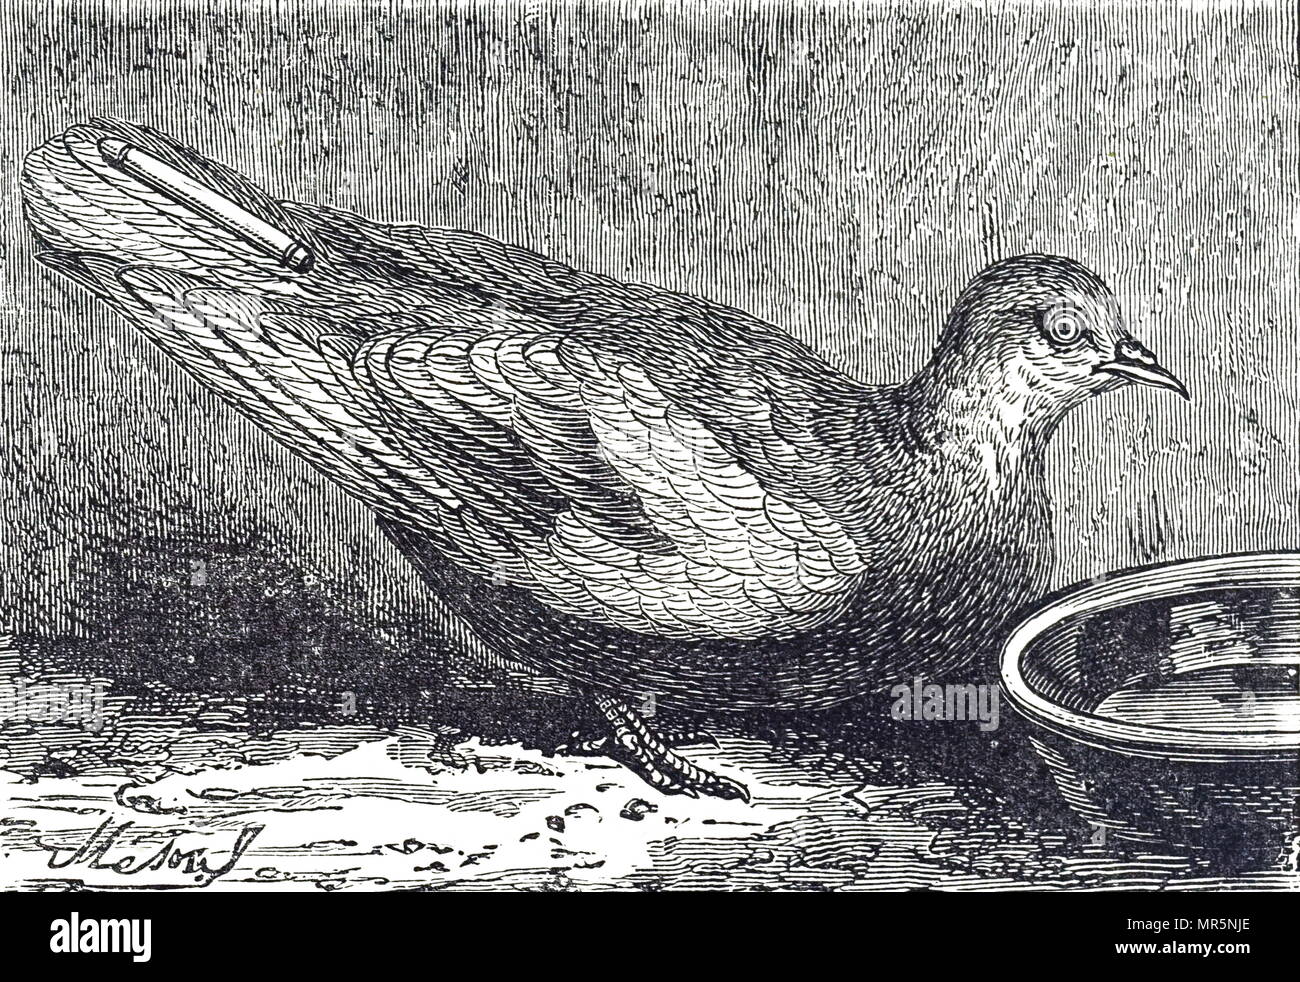 Grabado representando una paloma mensajera con una expedición fotográfica adjunta a su cola. Fecha del siglo XIX Foto de stock